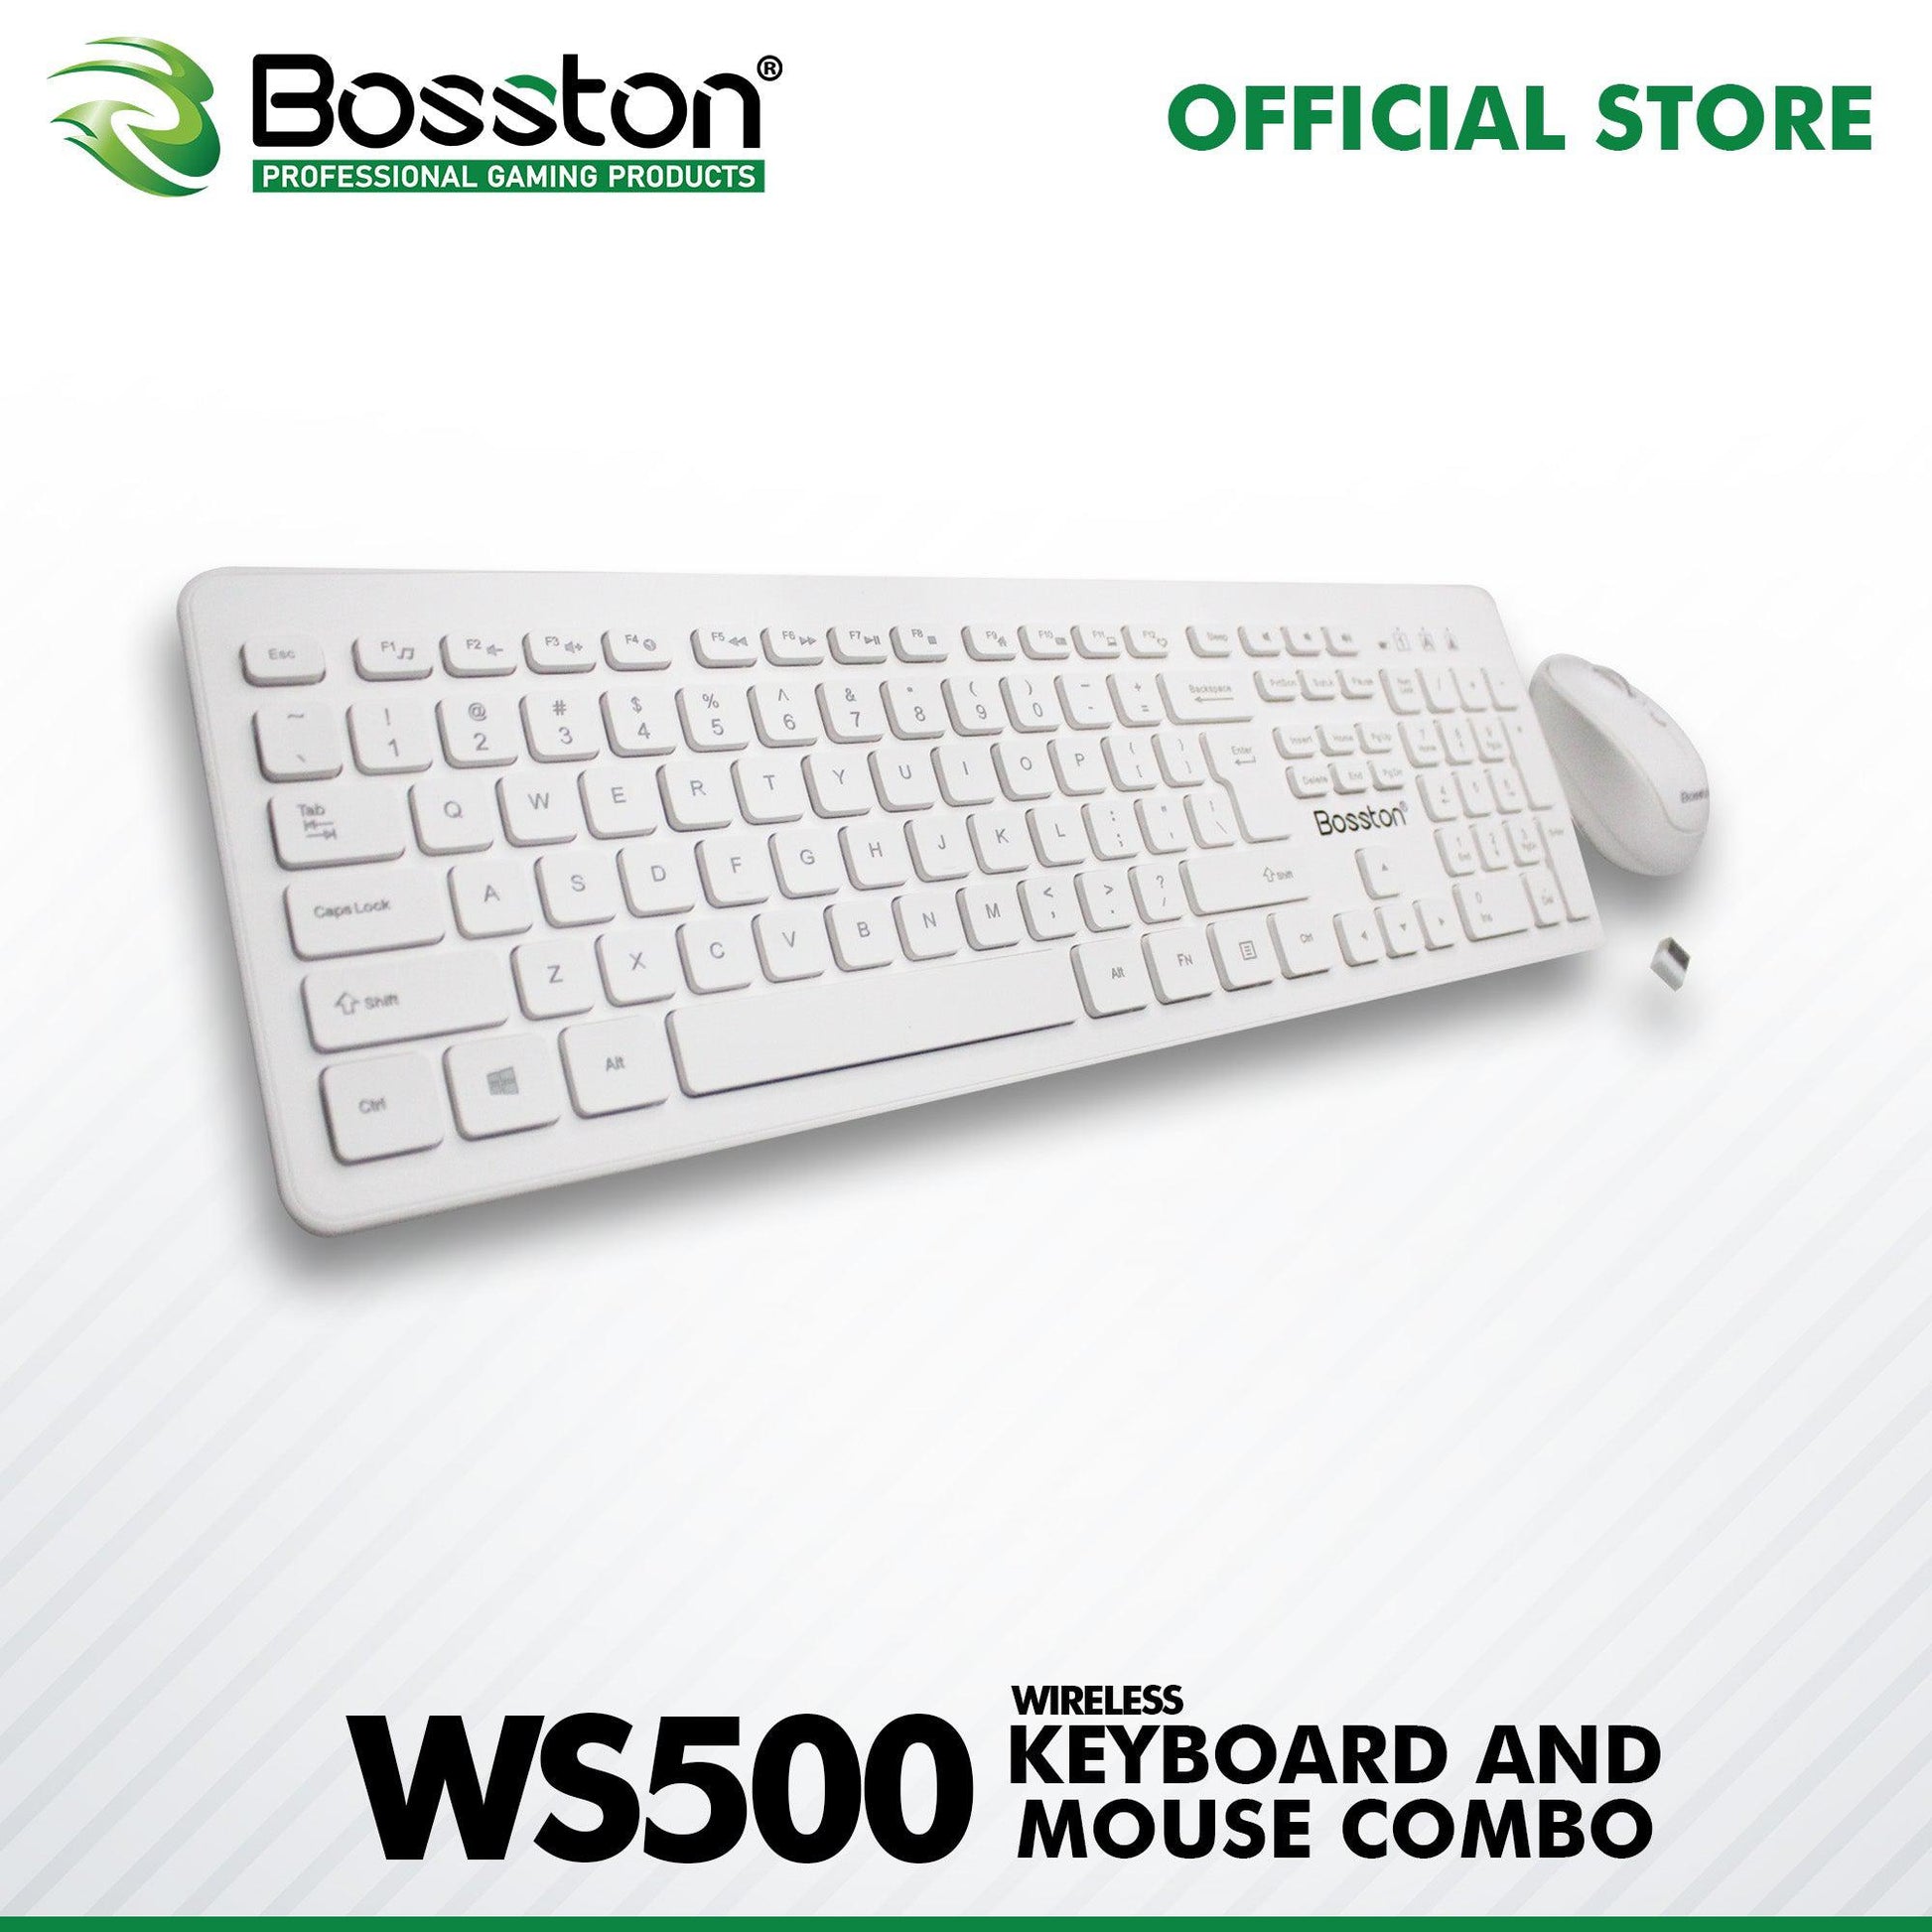 BOSSTON WS500 WHITE WIRELESS KEYBOARD & MOUSE COMBO-KEYBOARD-Makotek Computers